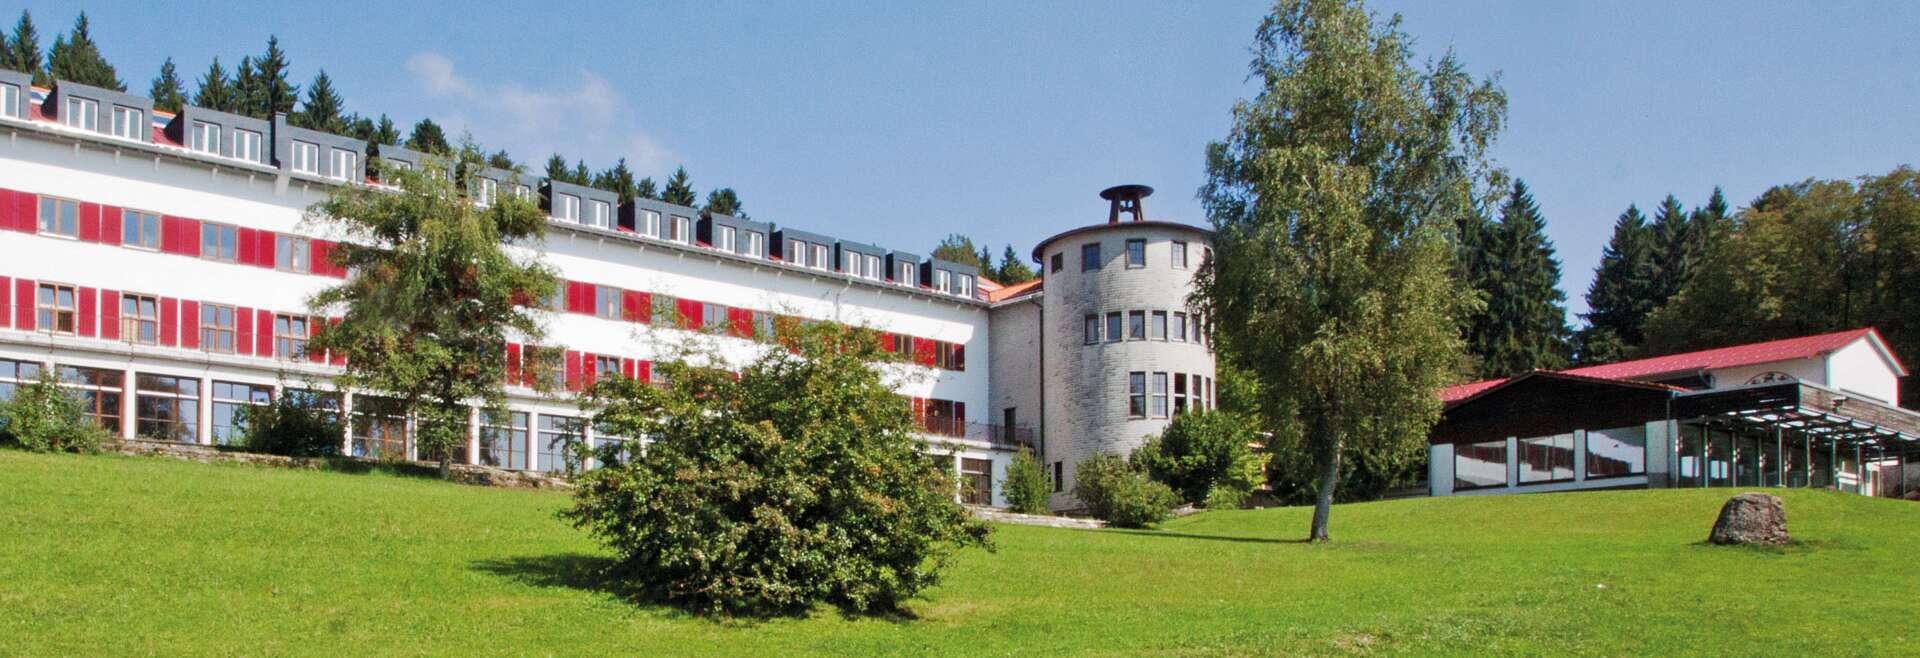 Sprachaufenthalt Deutschland, Humboldt Institut Lindenberg, Schulgebäude